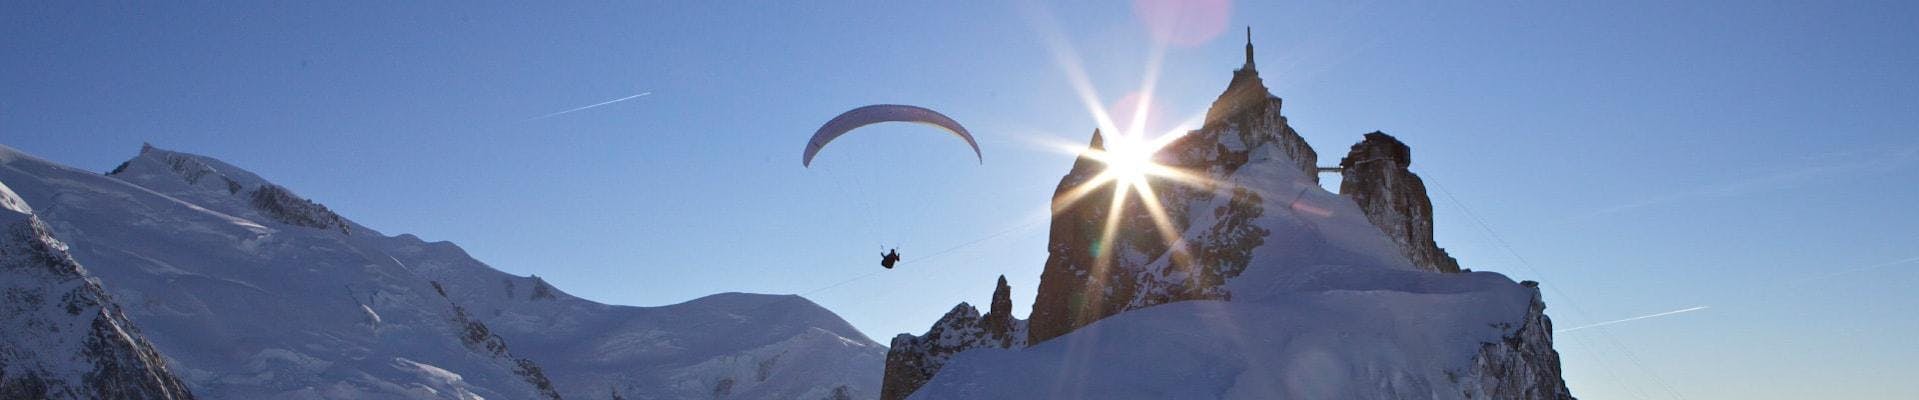 Volo panoramico in parapendio biposto a Chamonix (da 4 anni) - Plan de l'Aiguille.